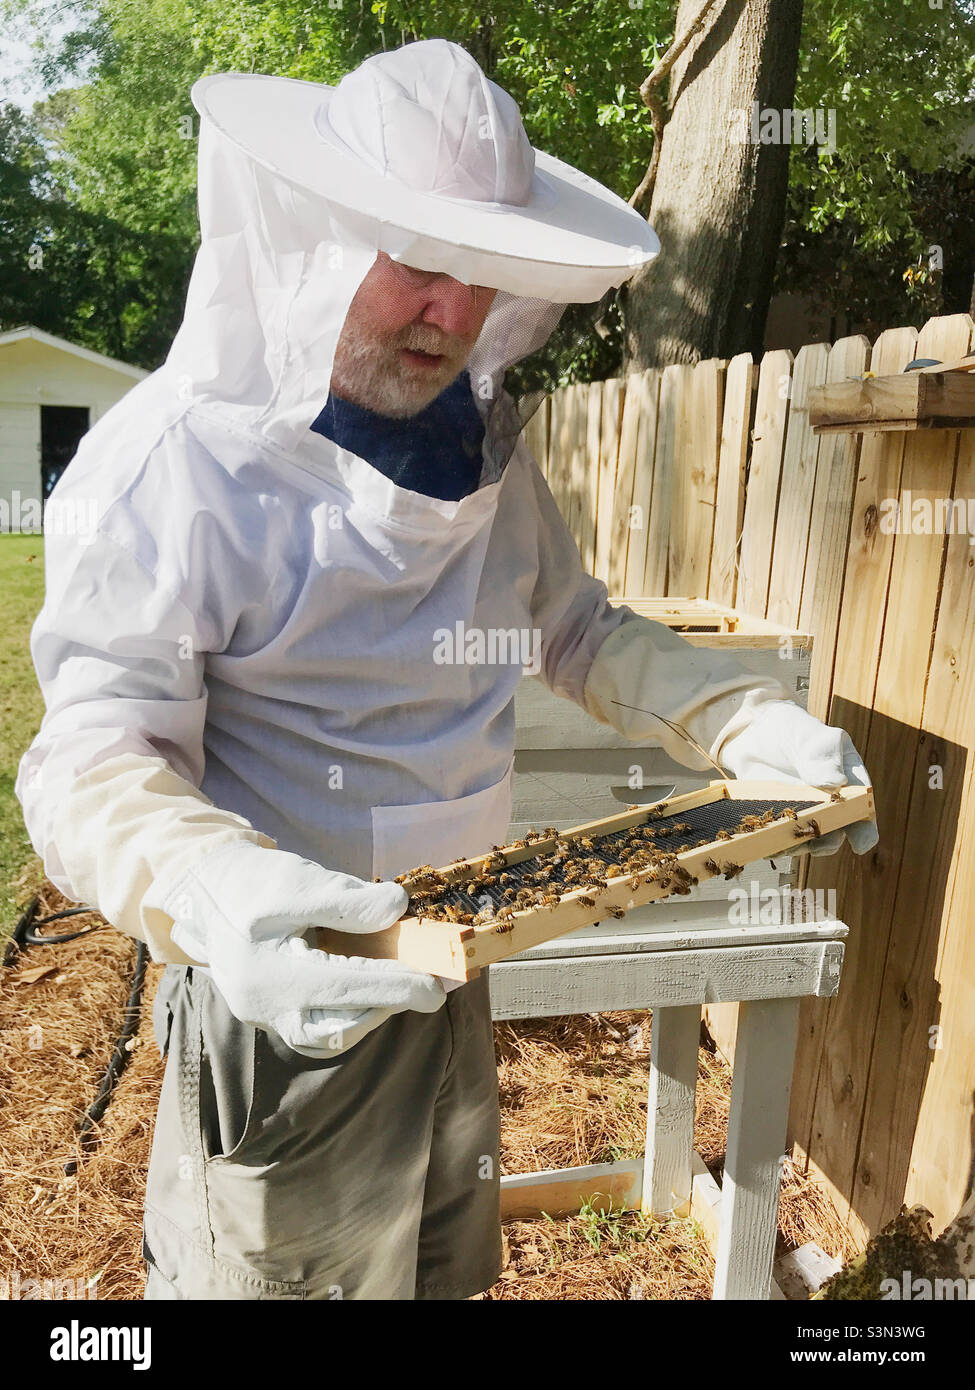 Backyard beekeeping. A beekeeper is handling Italian honeybees. Stock Photo